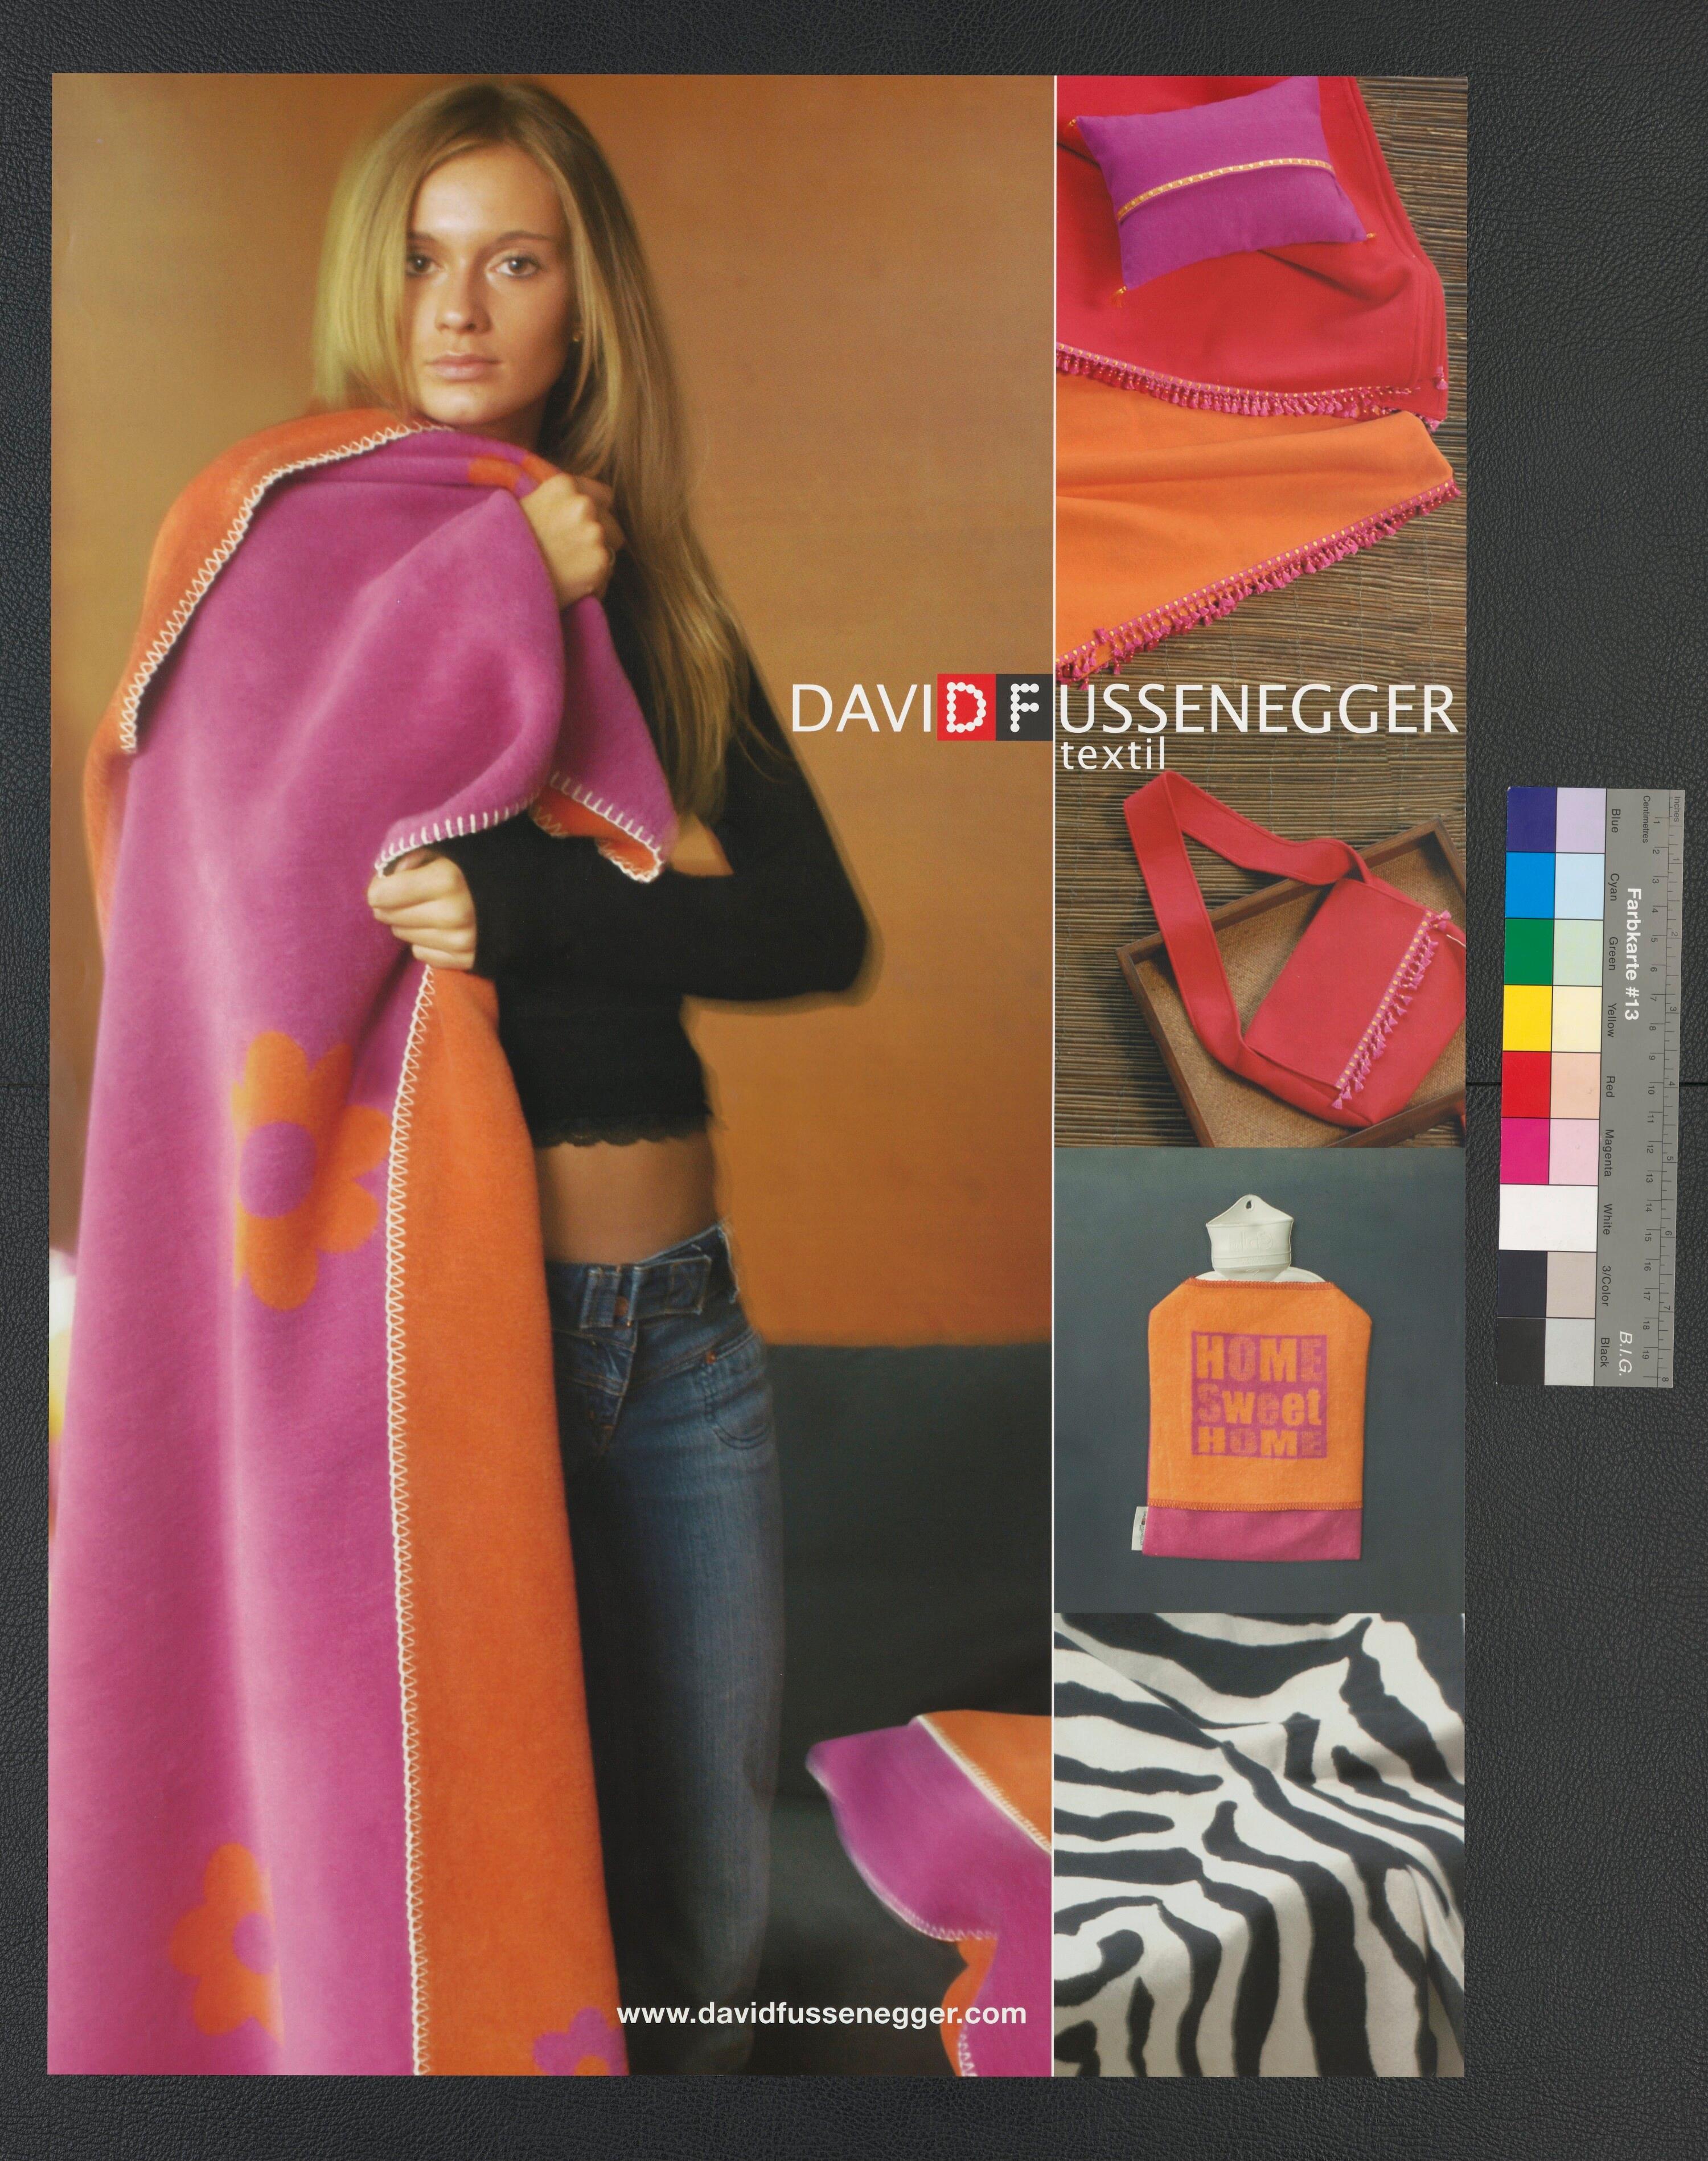 Werbeplakat von David Fussenegger Textil></div>


    <hr>
    <div class=